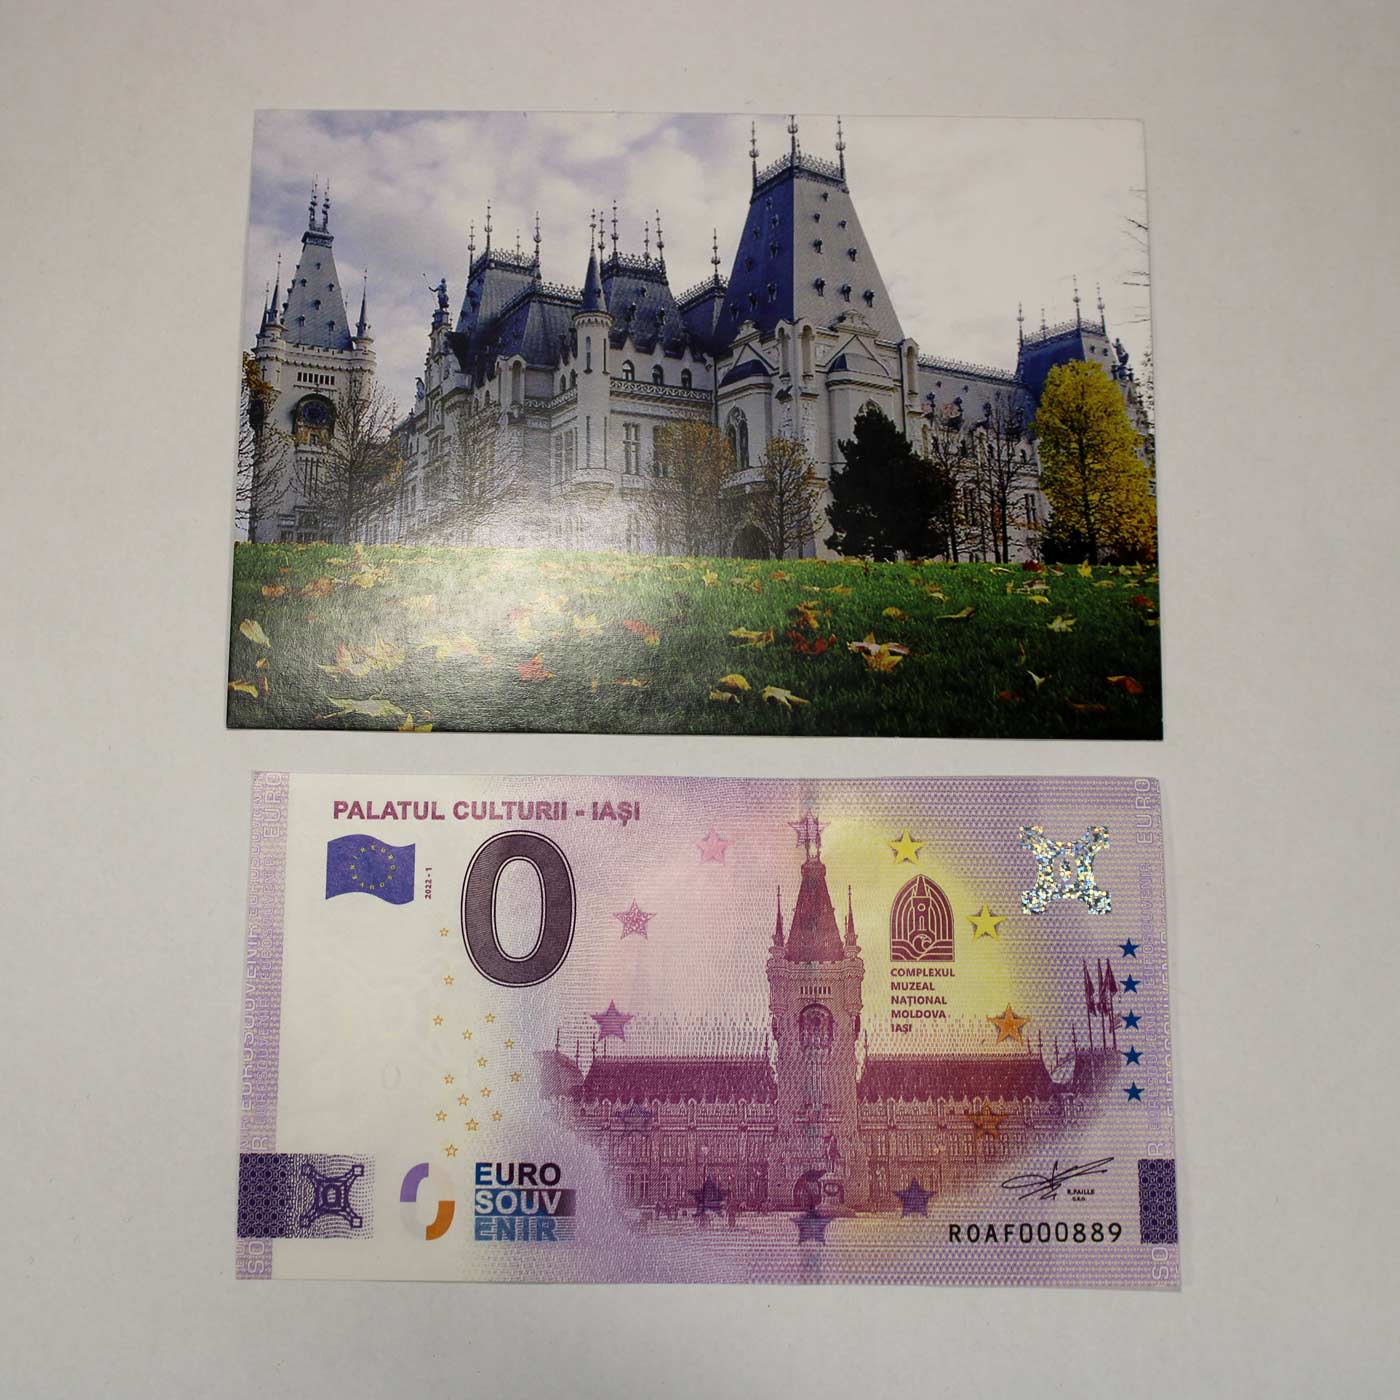 Bancnota-suvenir-Palatul-Culturii-20-de-lei-3